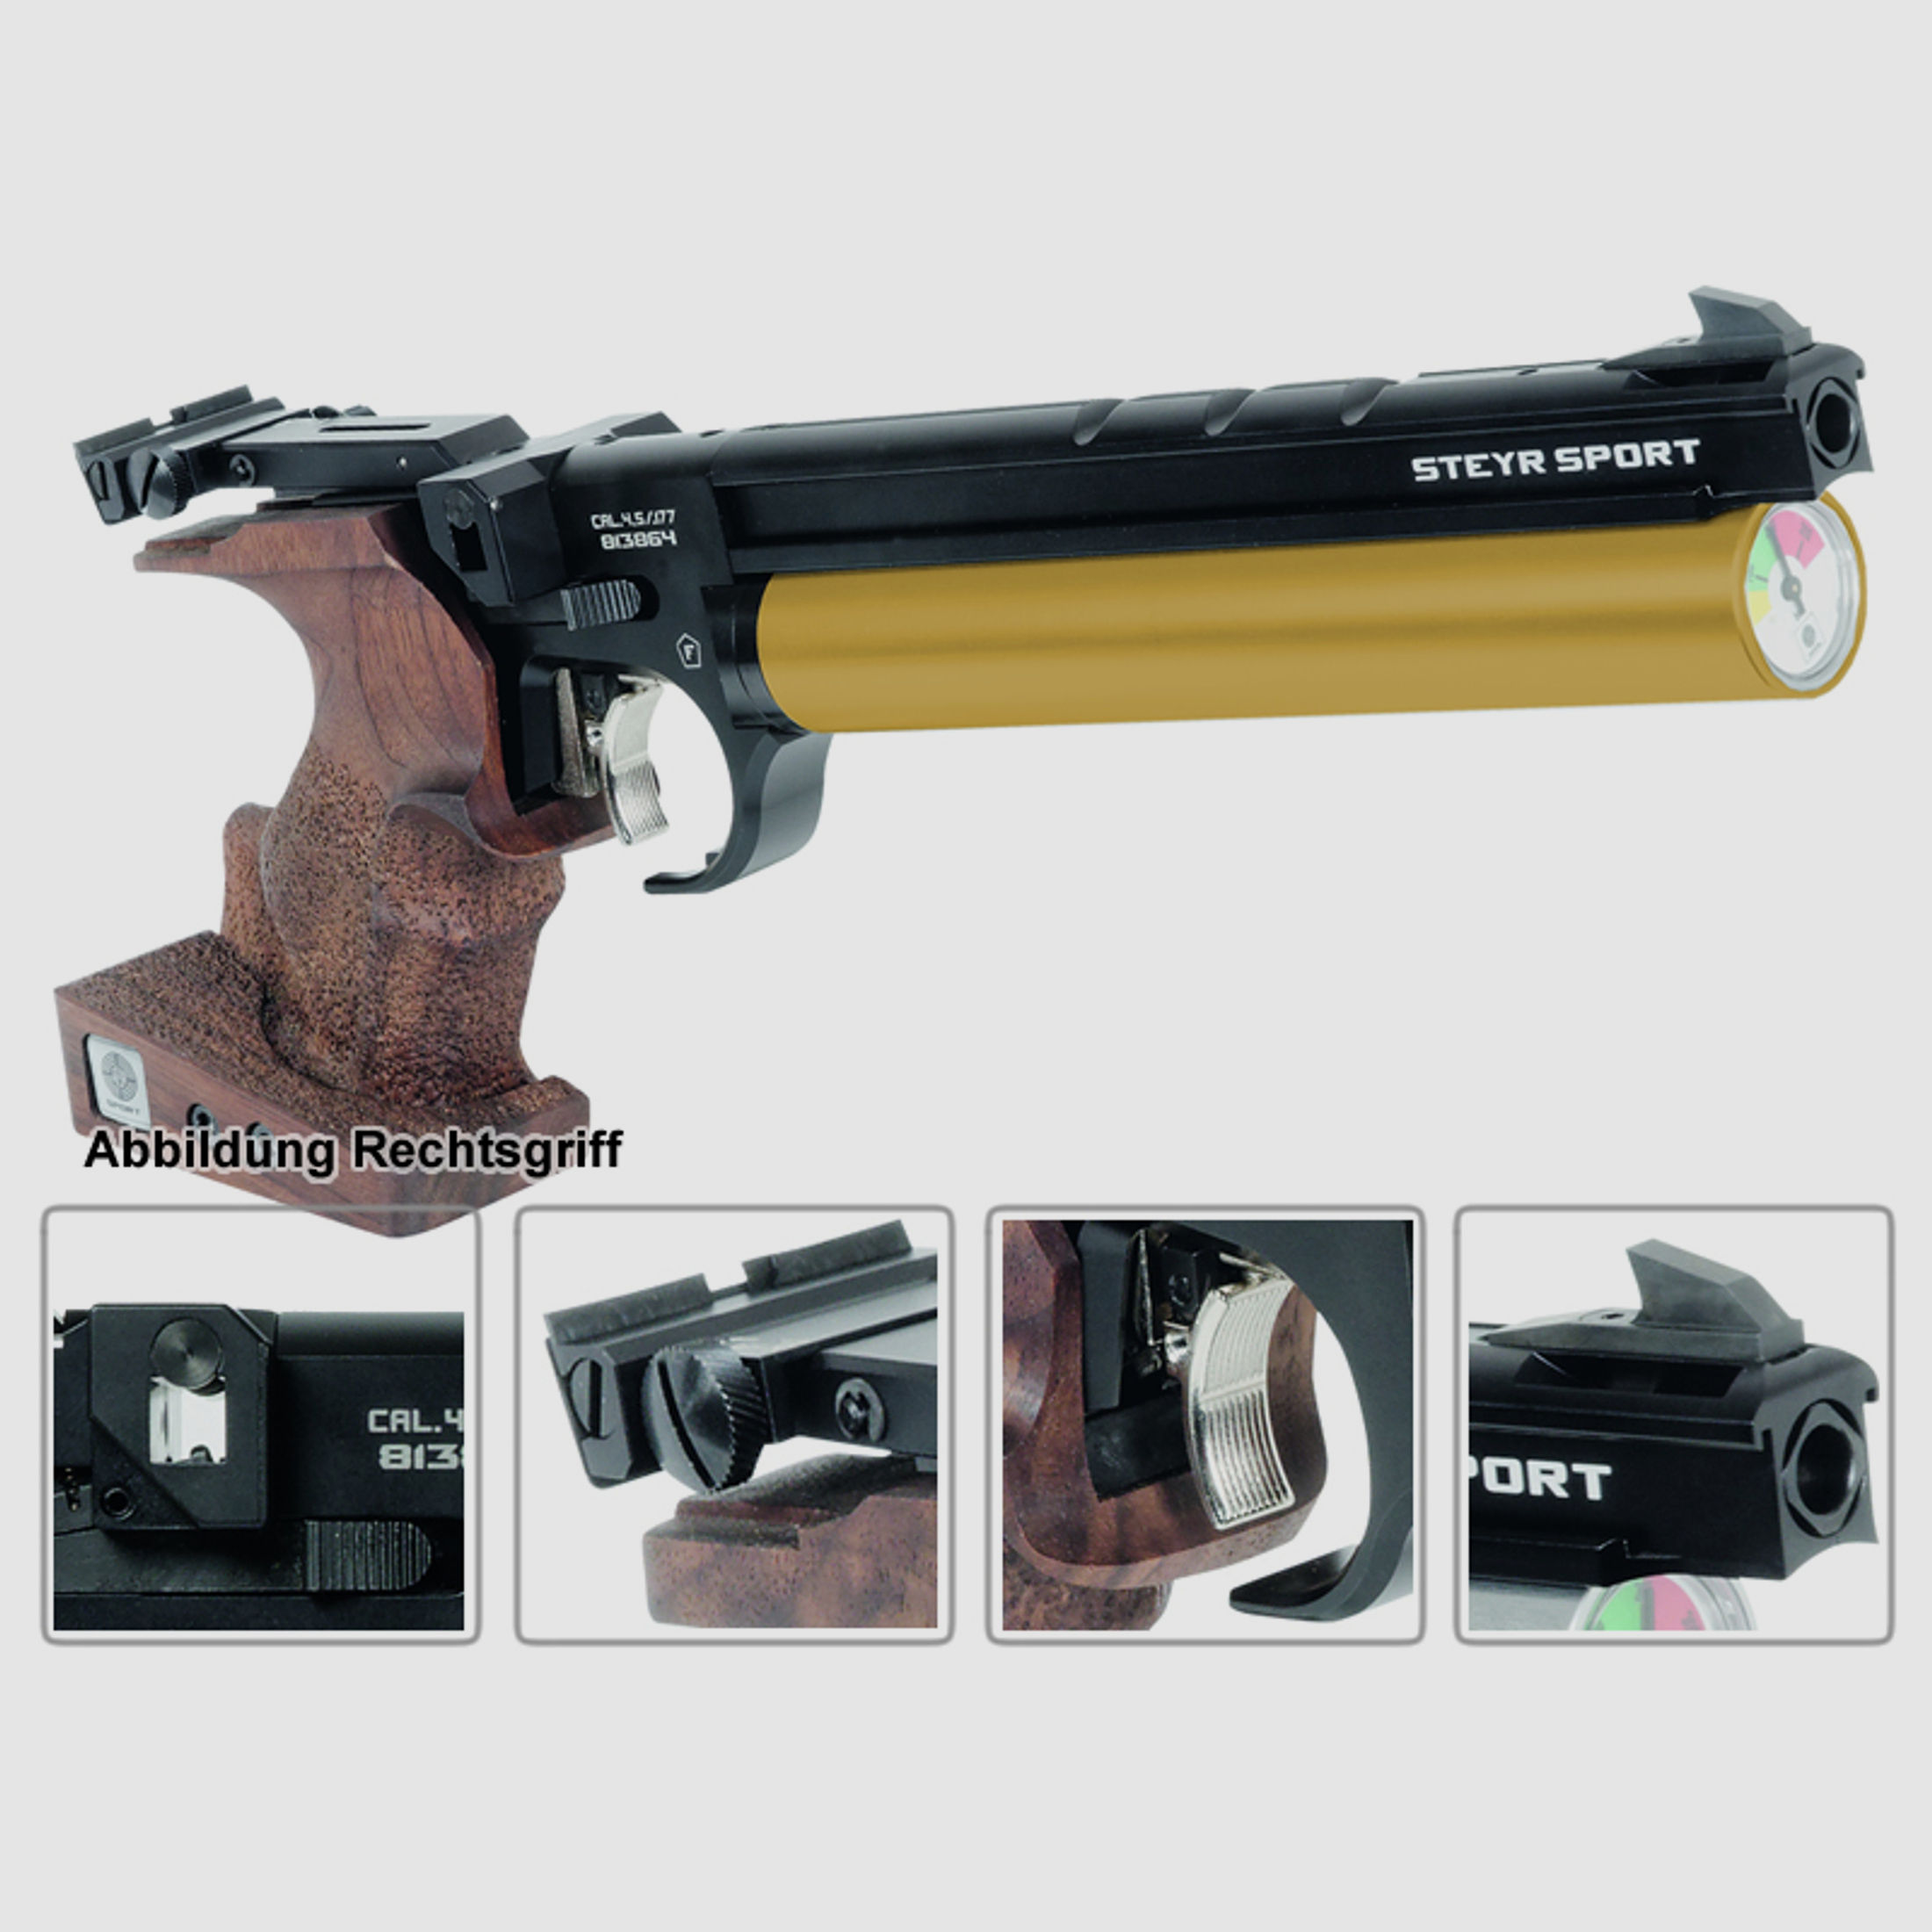 Match Pressluftpistole STEYR LP50 RF, 5er Magazin, goldene Kartusche, Rechtsgriff (P18)